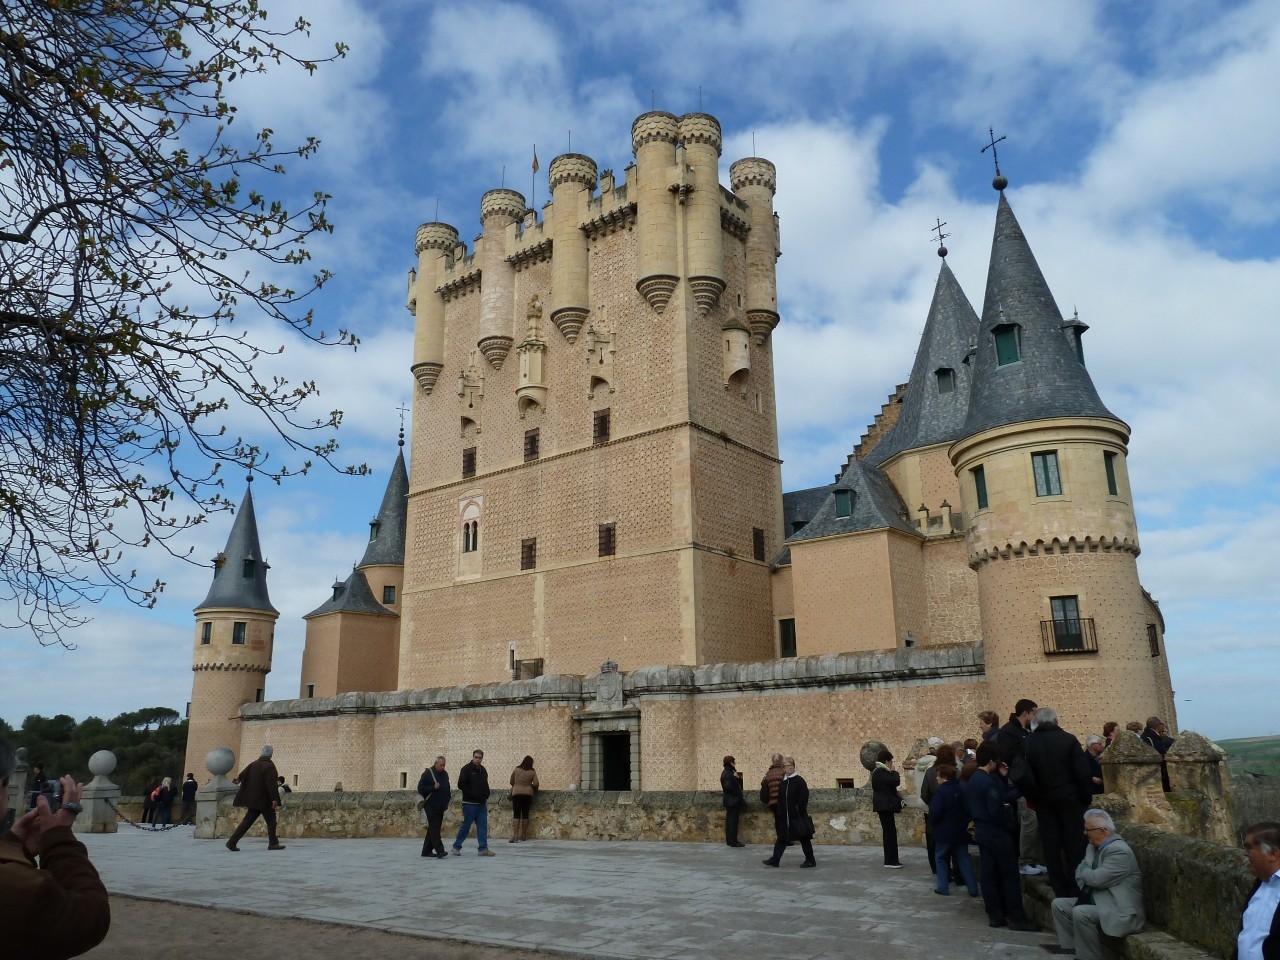 The Alcazar of Segovia (Spain).